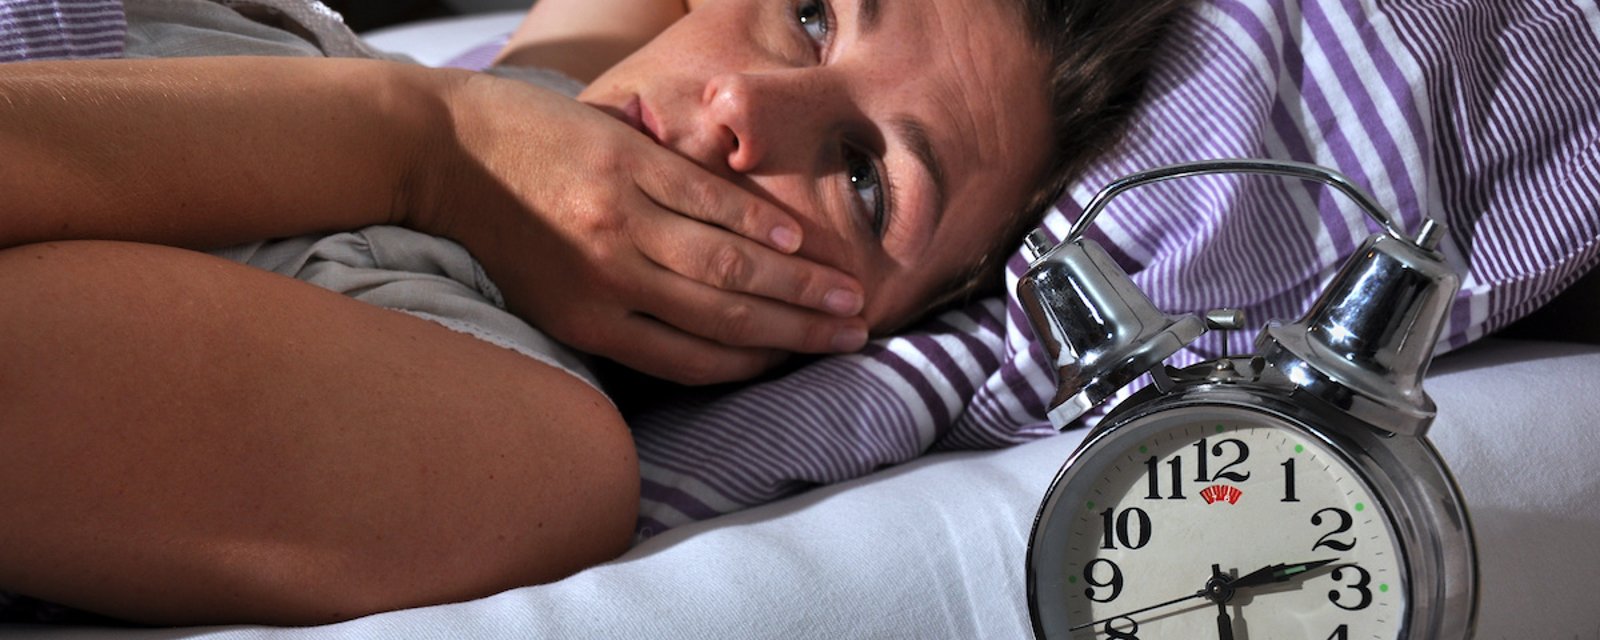 Les 7 aliments à éviter si vous avez un trouble du sommeil, selon des médecins 